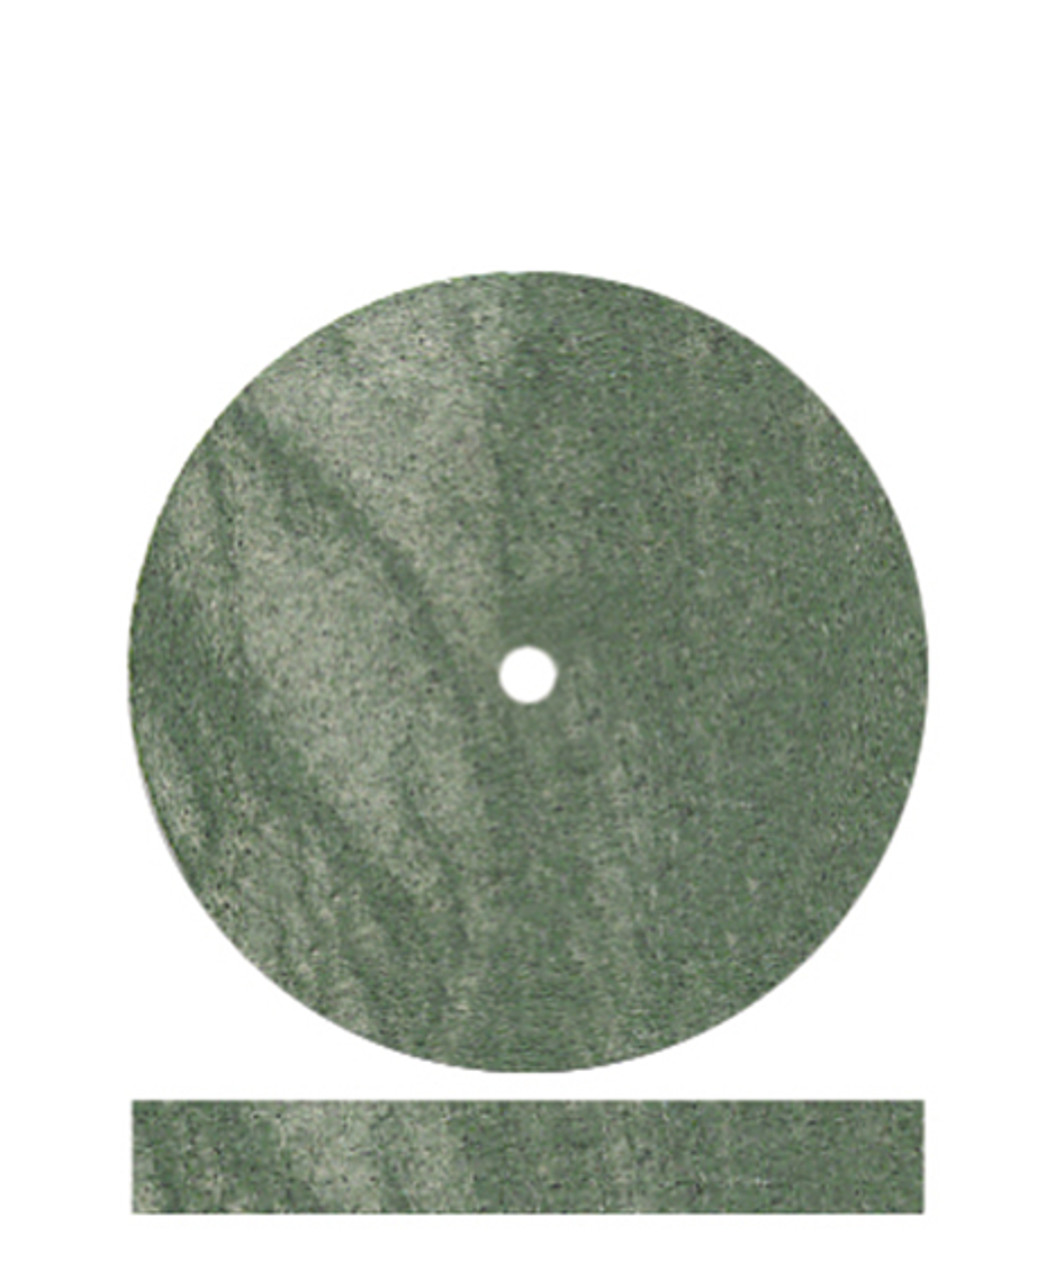 Dedeco Polierrad grün Ø 22 x 3,1 mm